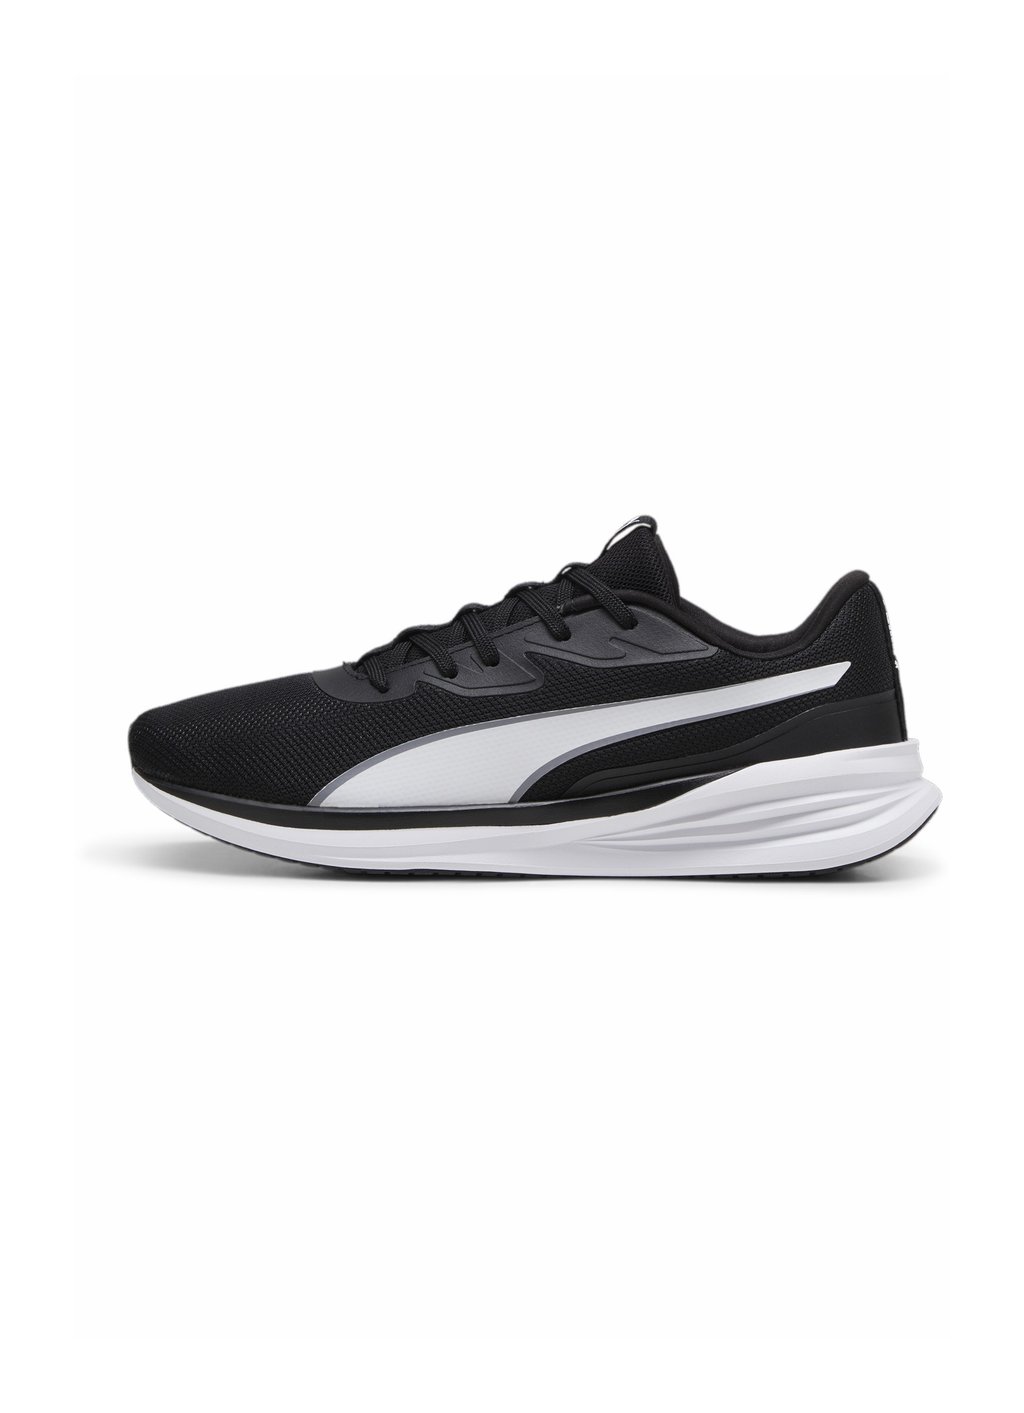 Нейтральные кроссовки RUNNER V3 Puma, цвет black white